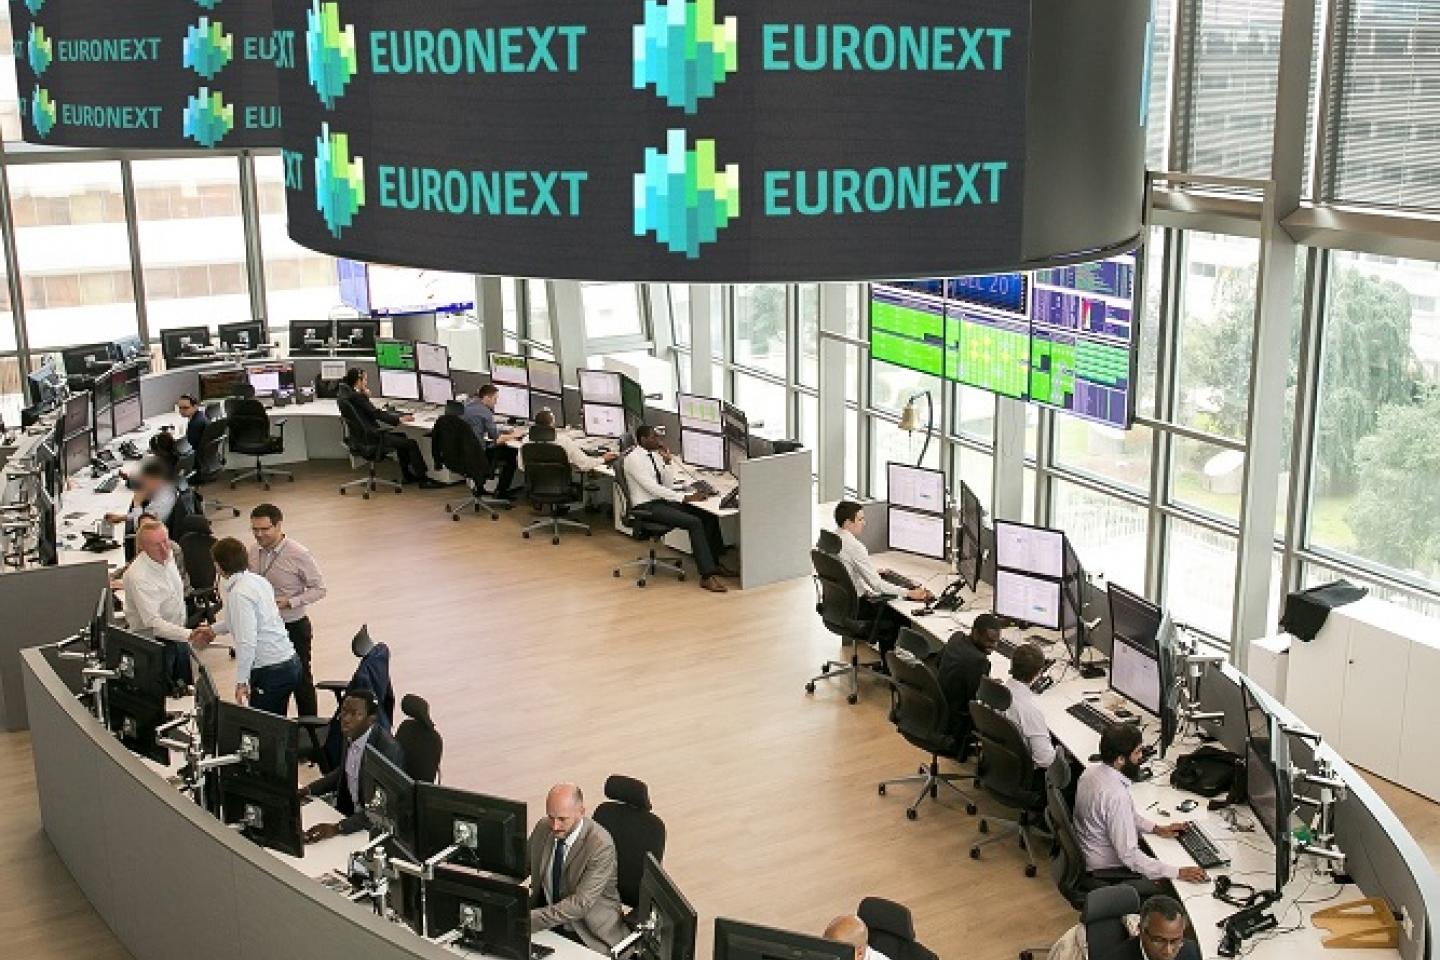 Беребит биржа. Евронекст биржа. Миланская фондовая биржа. Итальянская фондовая биржа. Миланская фондовая биржа Euronext.